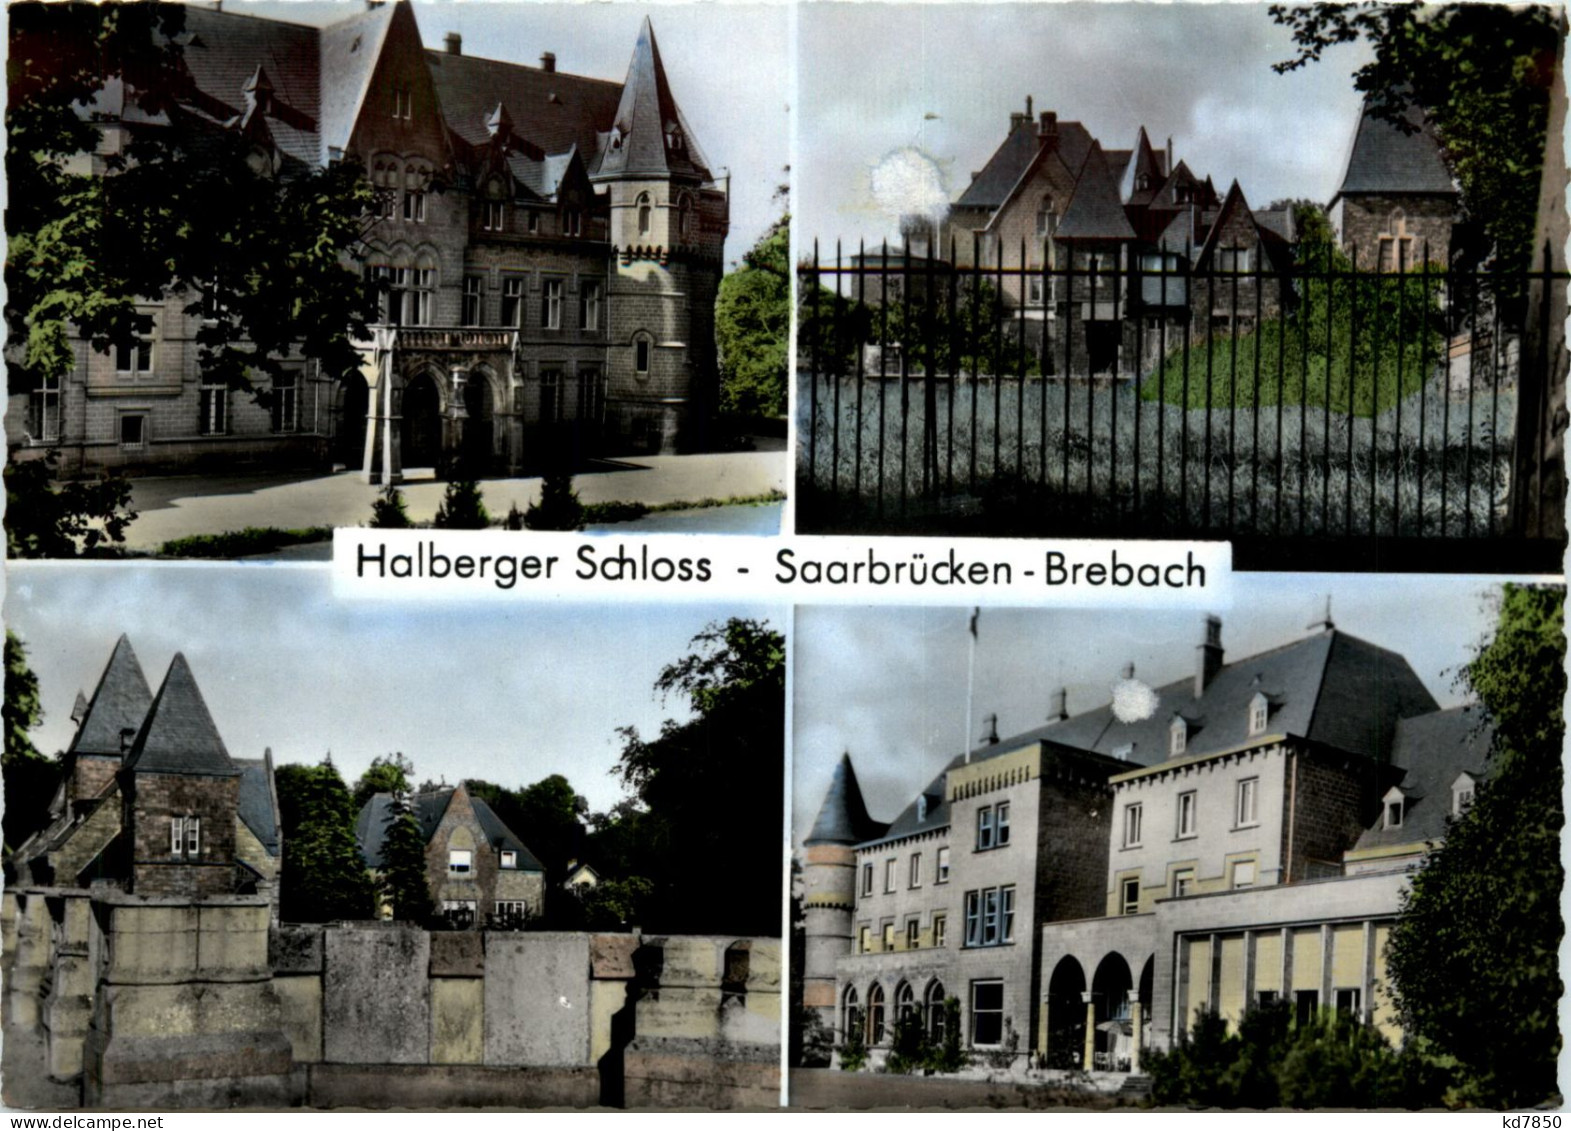 Saarbrücken-Brebach, Halberger Schloss - Saarbrücken